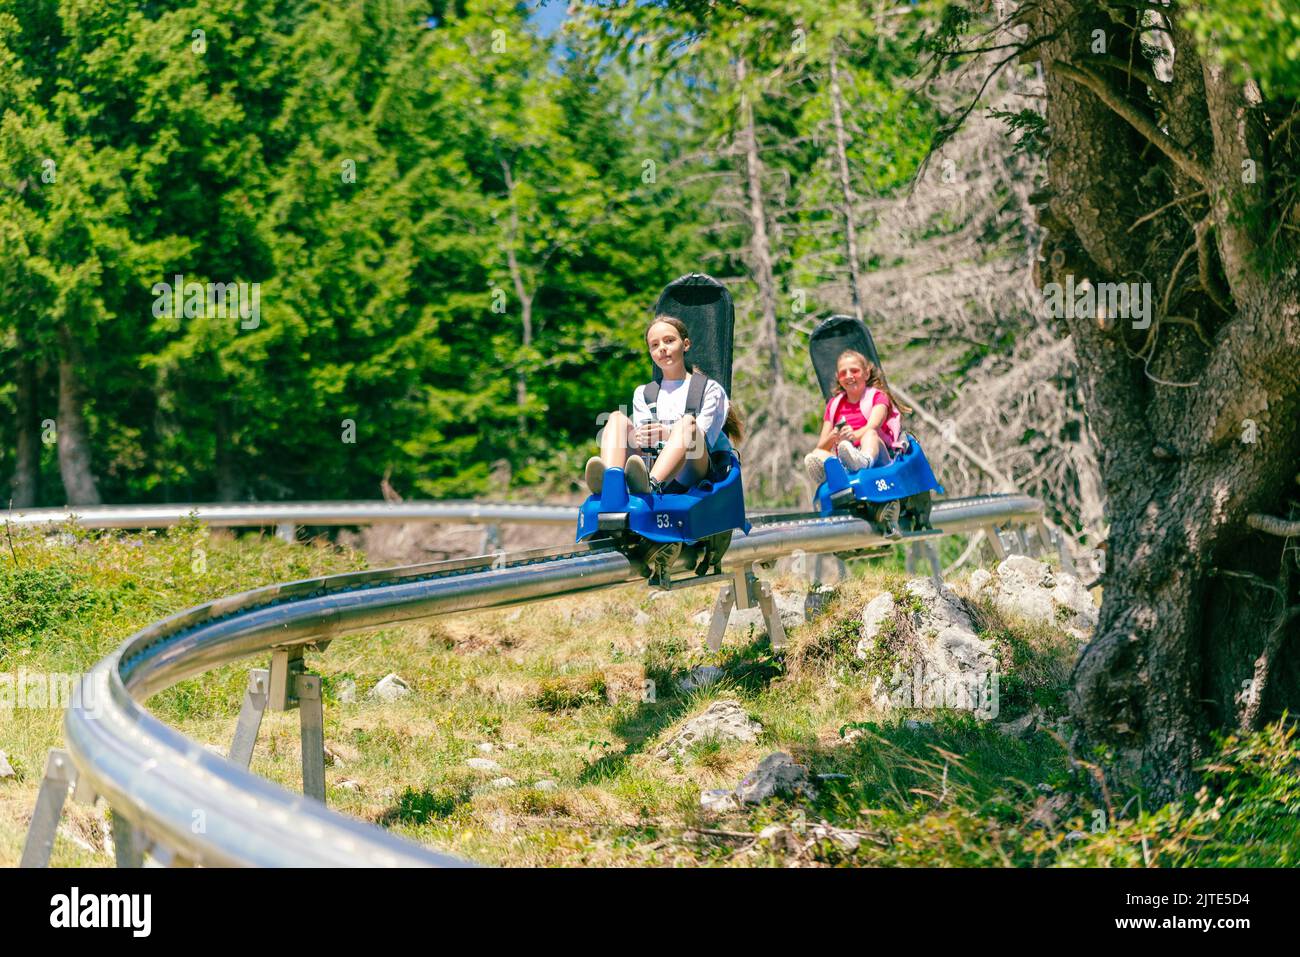 Skigebiet Bergbahn. Zwei Mädchen, eines hinter dem anderen, gehen die Skipiste hinunter. Wald und Bäume im Hintergrund Stockfoto